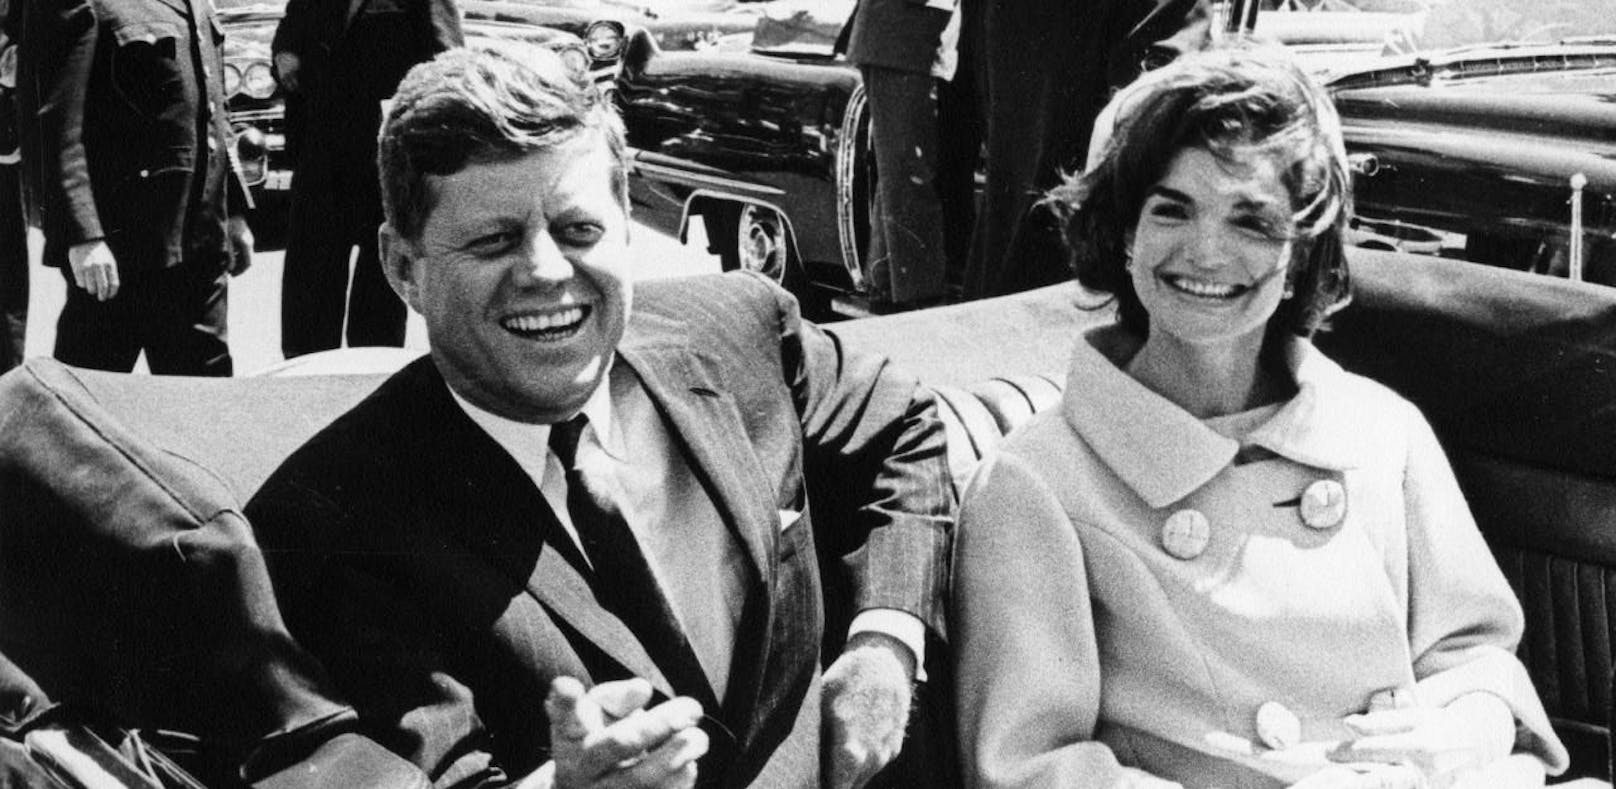 Um das Attentat auf John F. Kennedy ranken sich bis heute viele Gerüchte und Verschwörungstheorien.